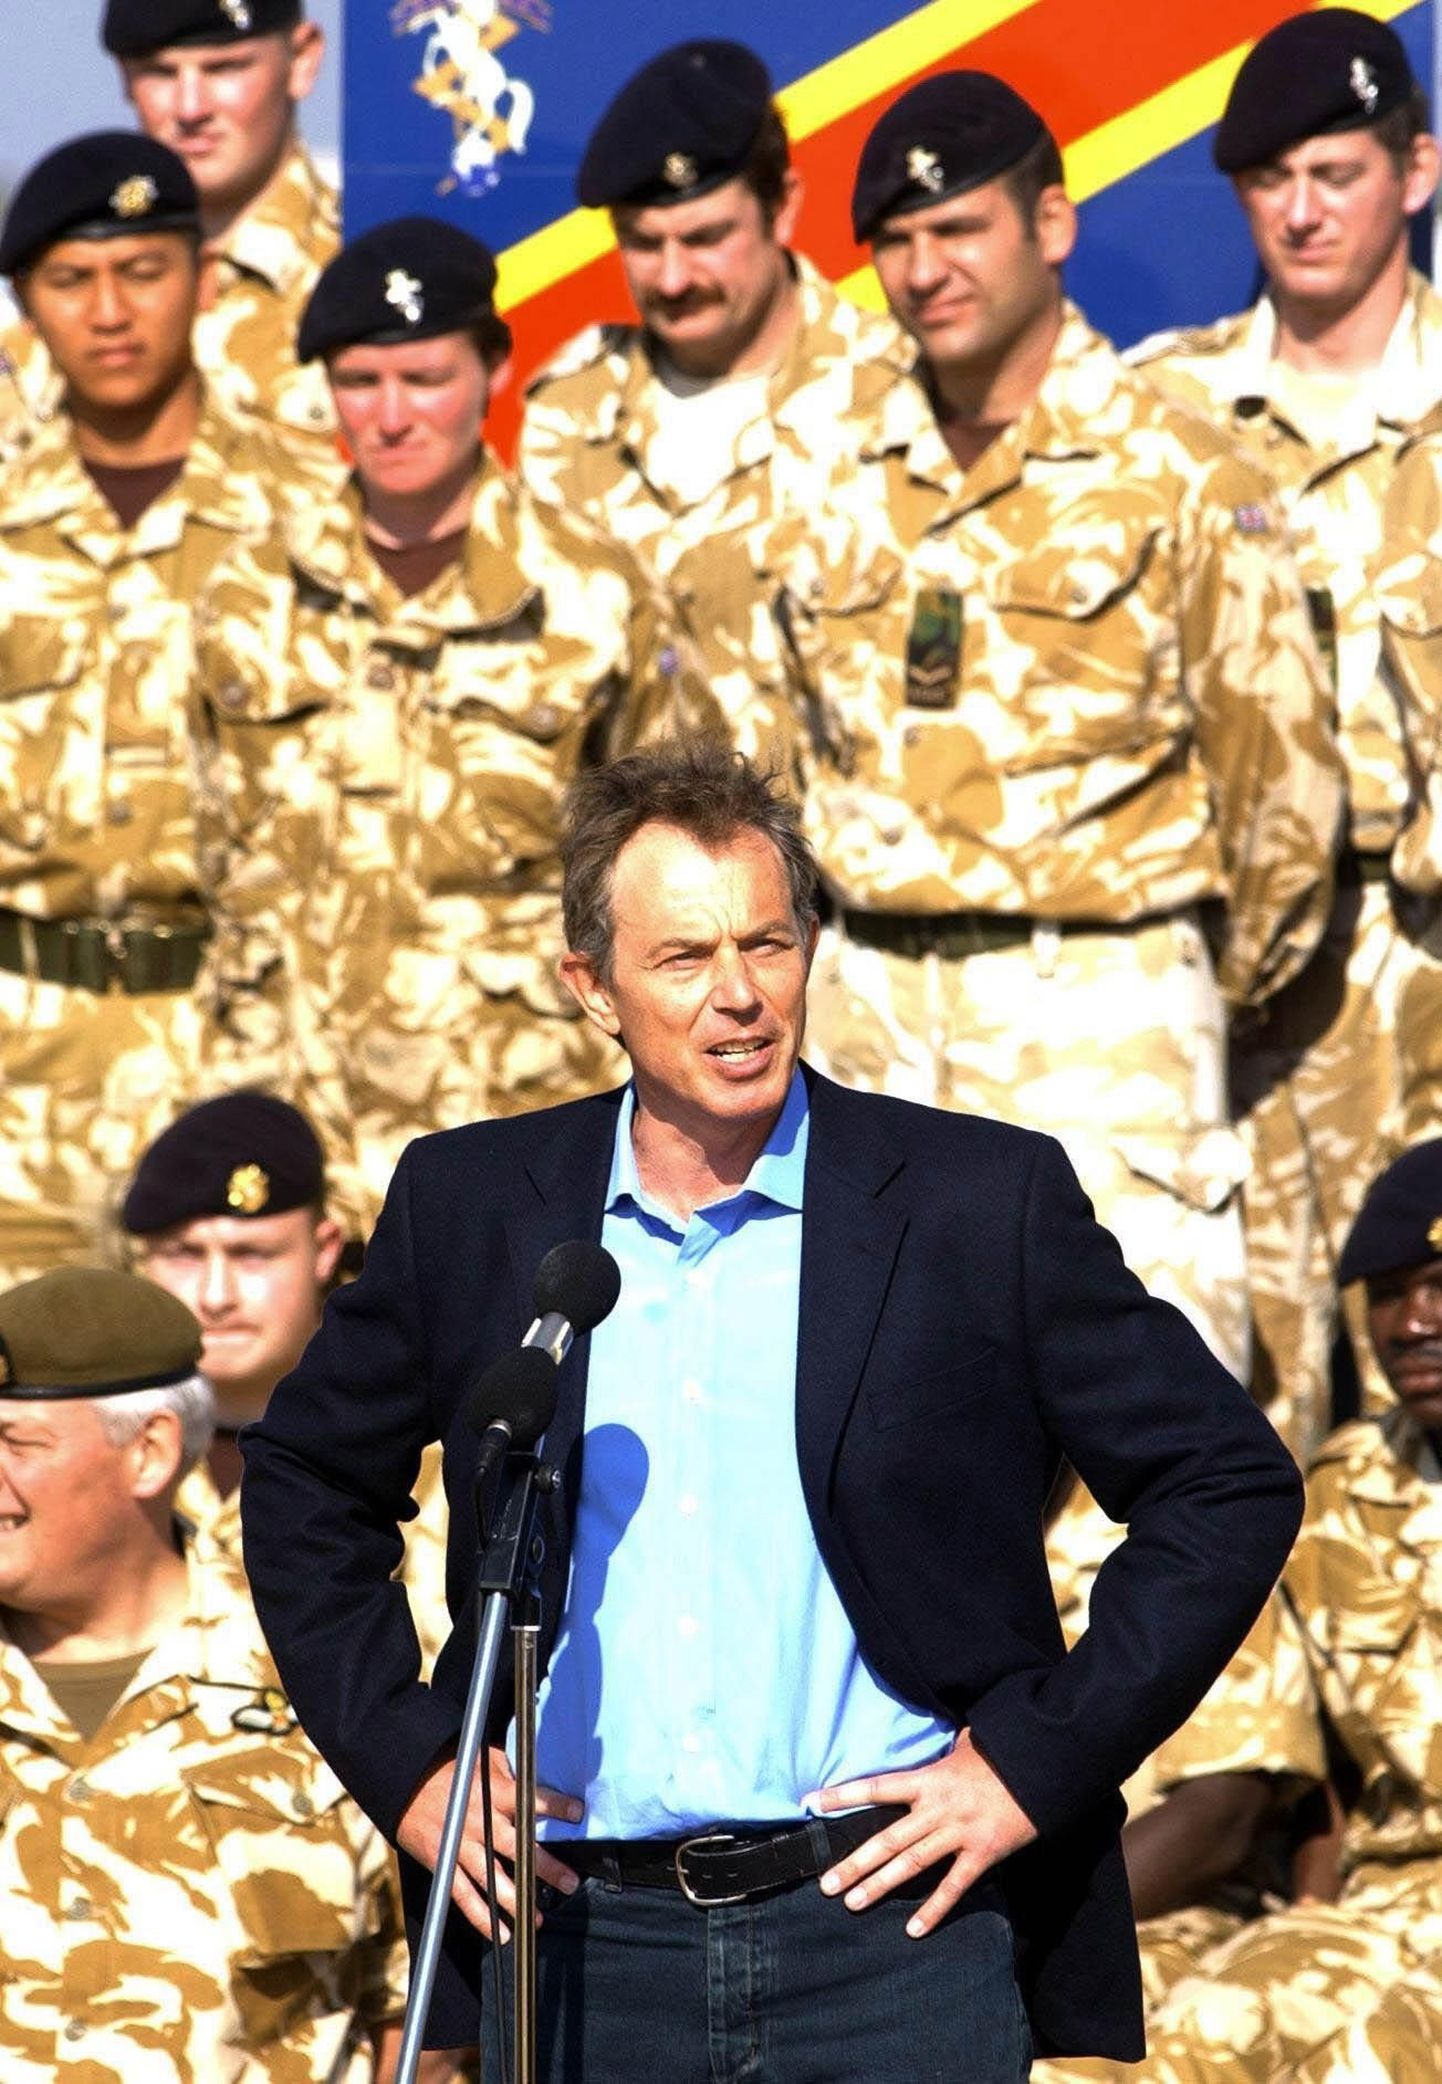 Tony Blair kohtumisel Briti sõduritega Iraagis Basras. Pilt on tehtud 2004. aastal.